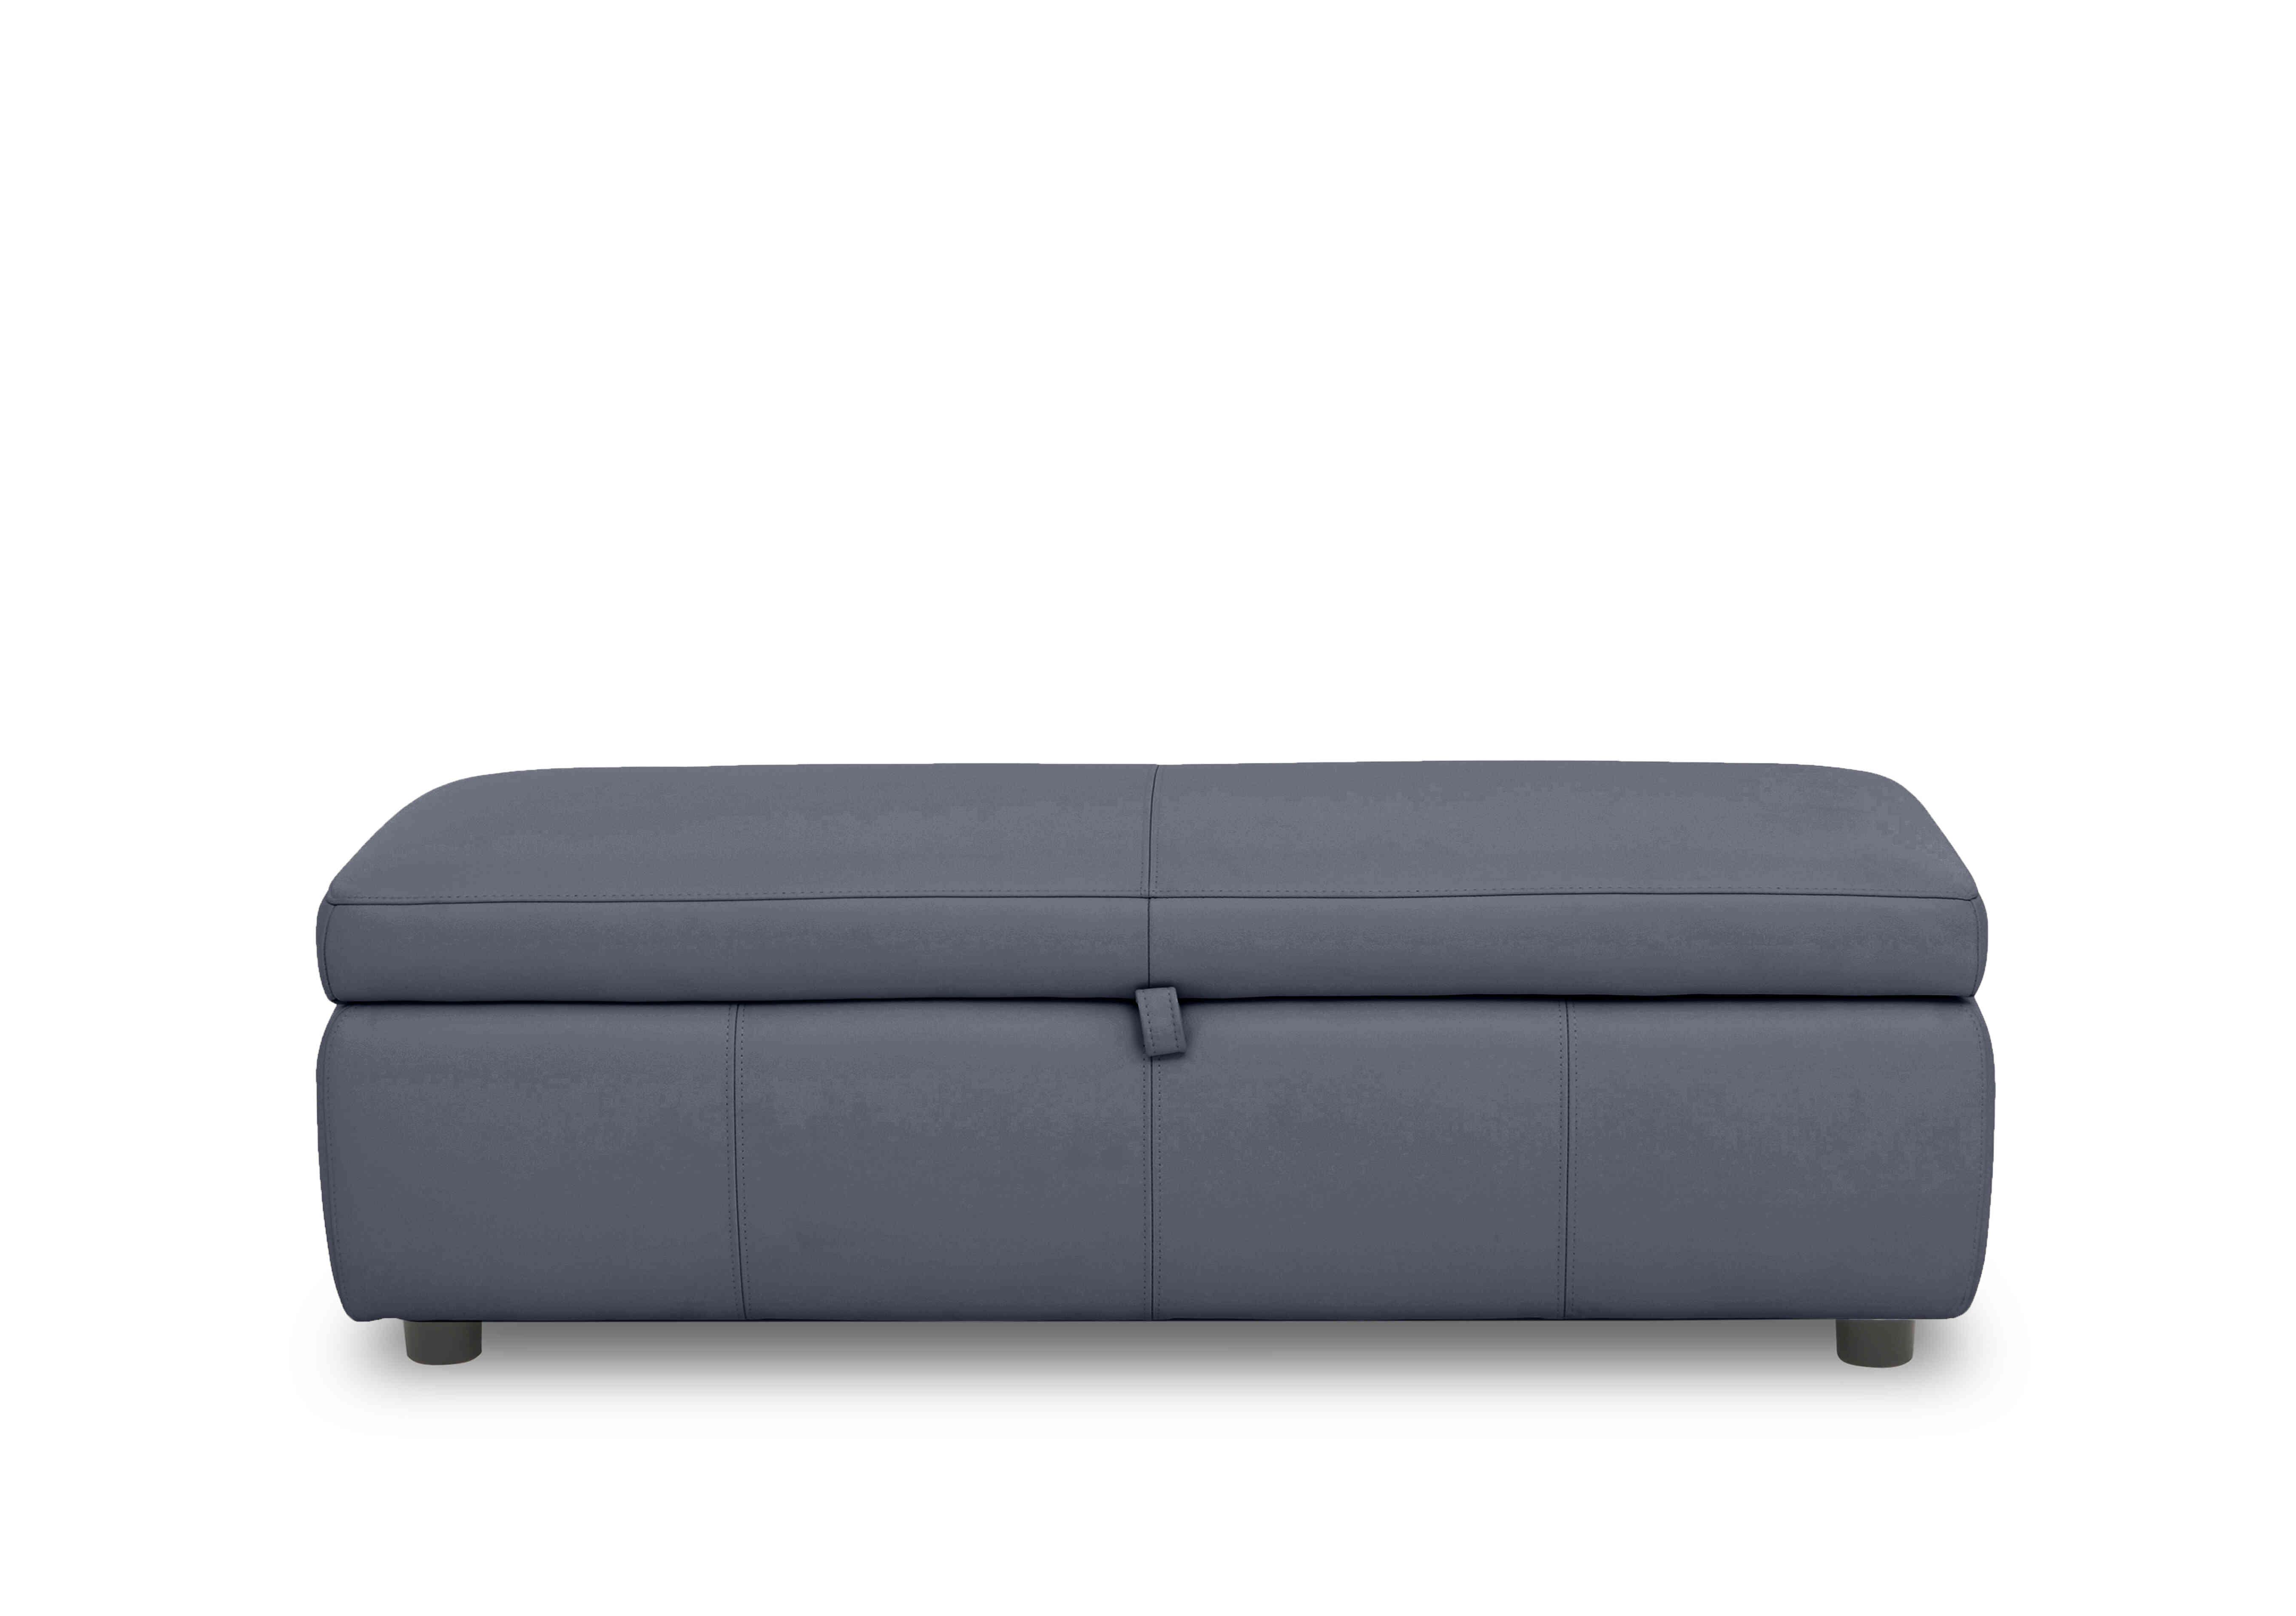 Stark 150cm Leather Blanket Box in Bv-313e Ocean Blue on Furniture Village